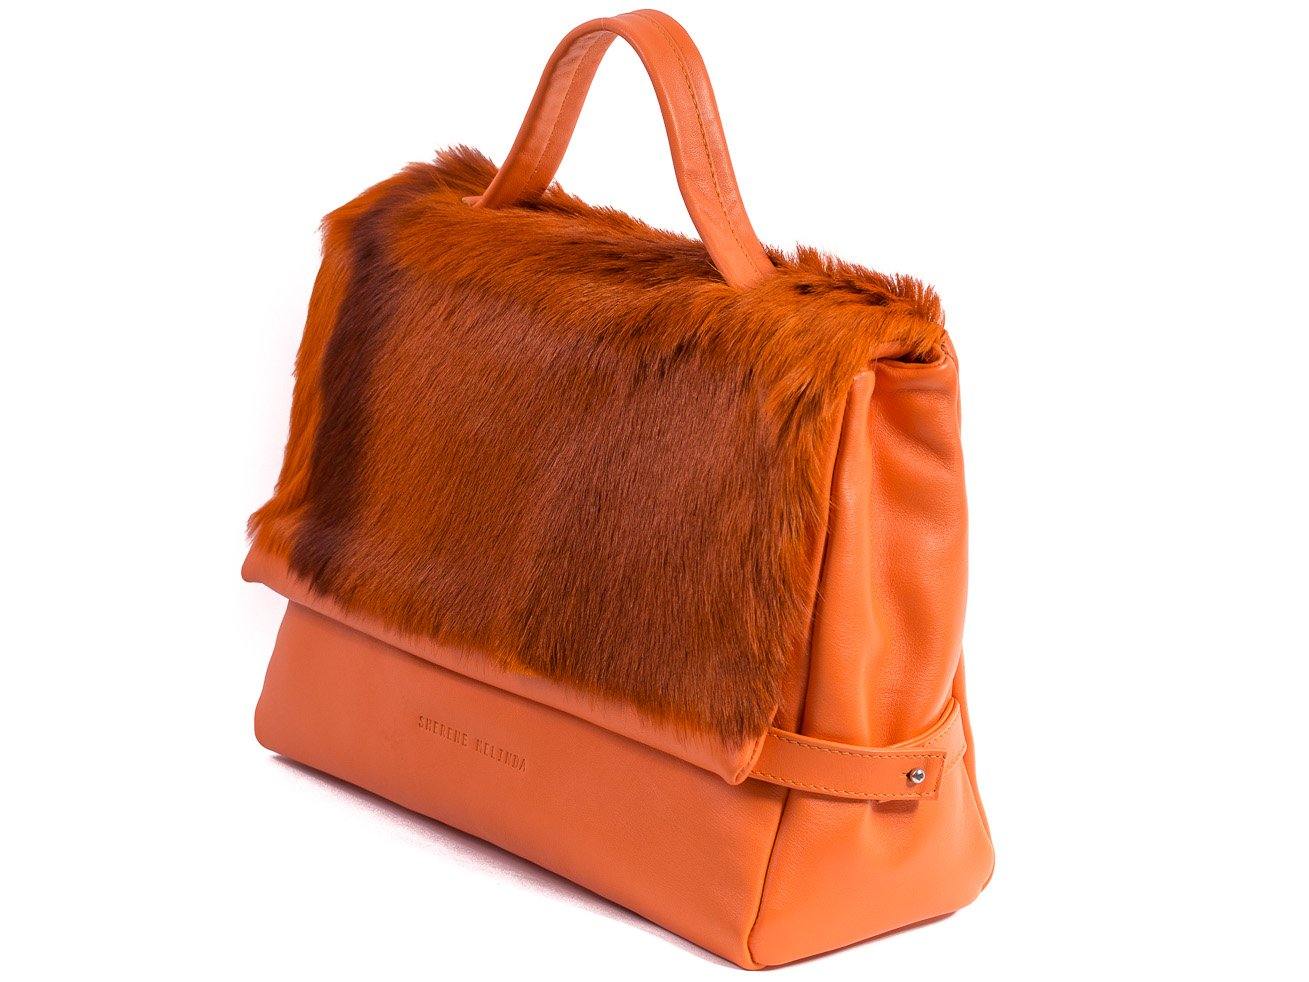 sherene melinda springbok hair-on-hide orange leather smith tote bag Stripe side angle